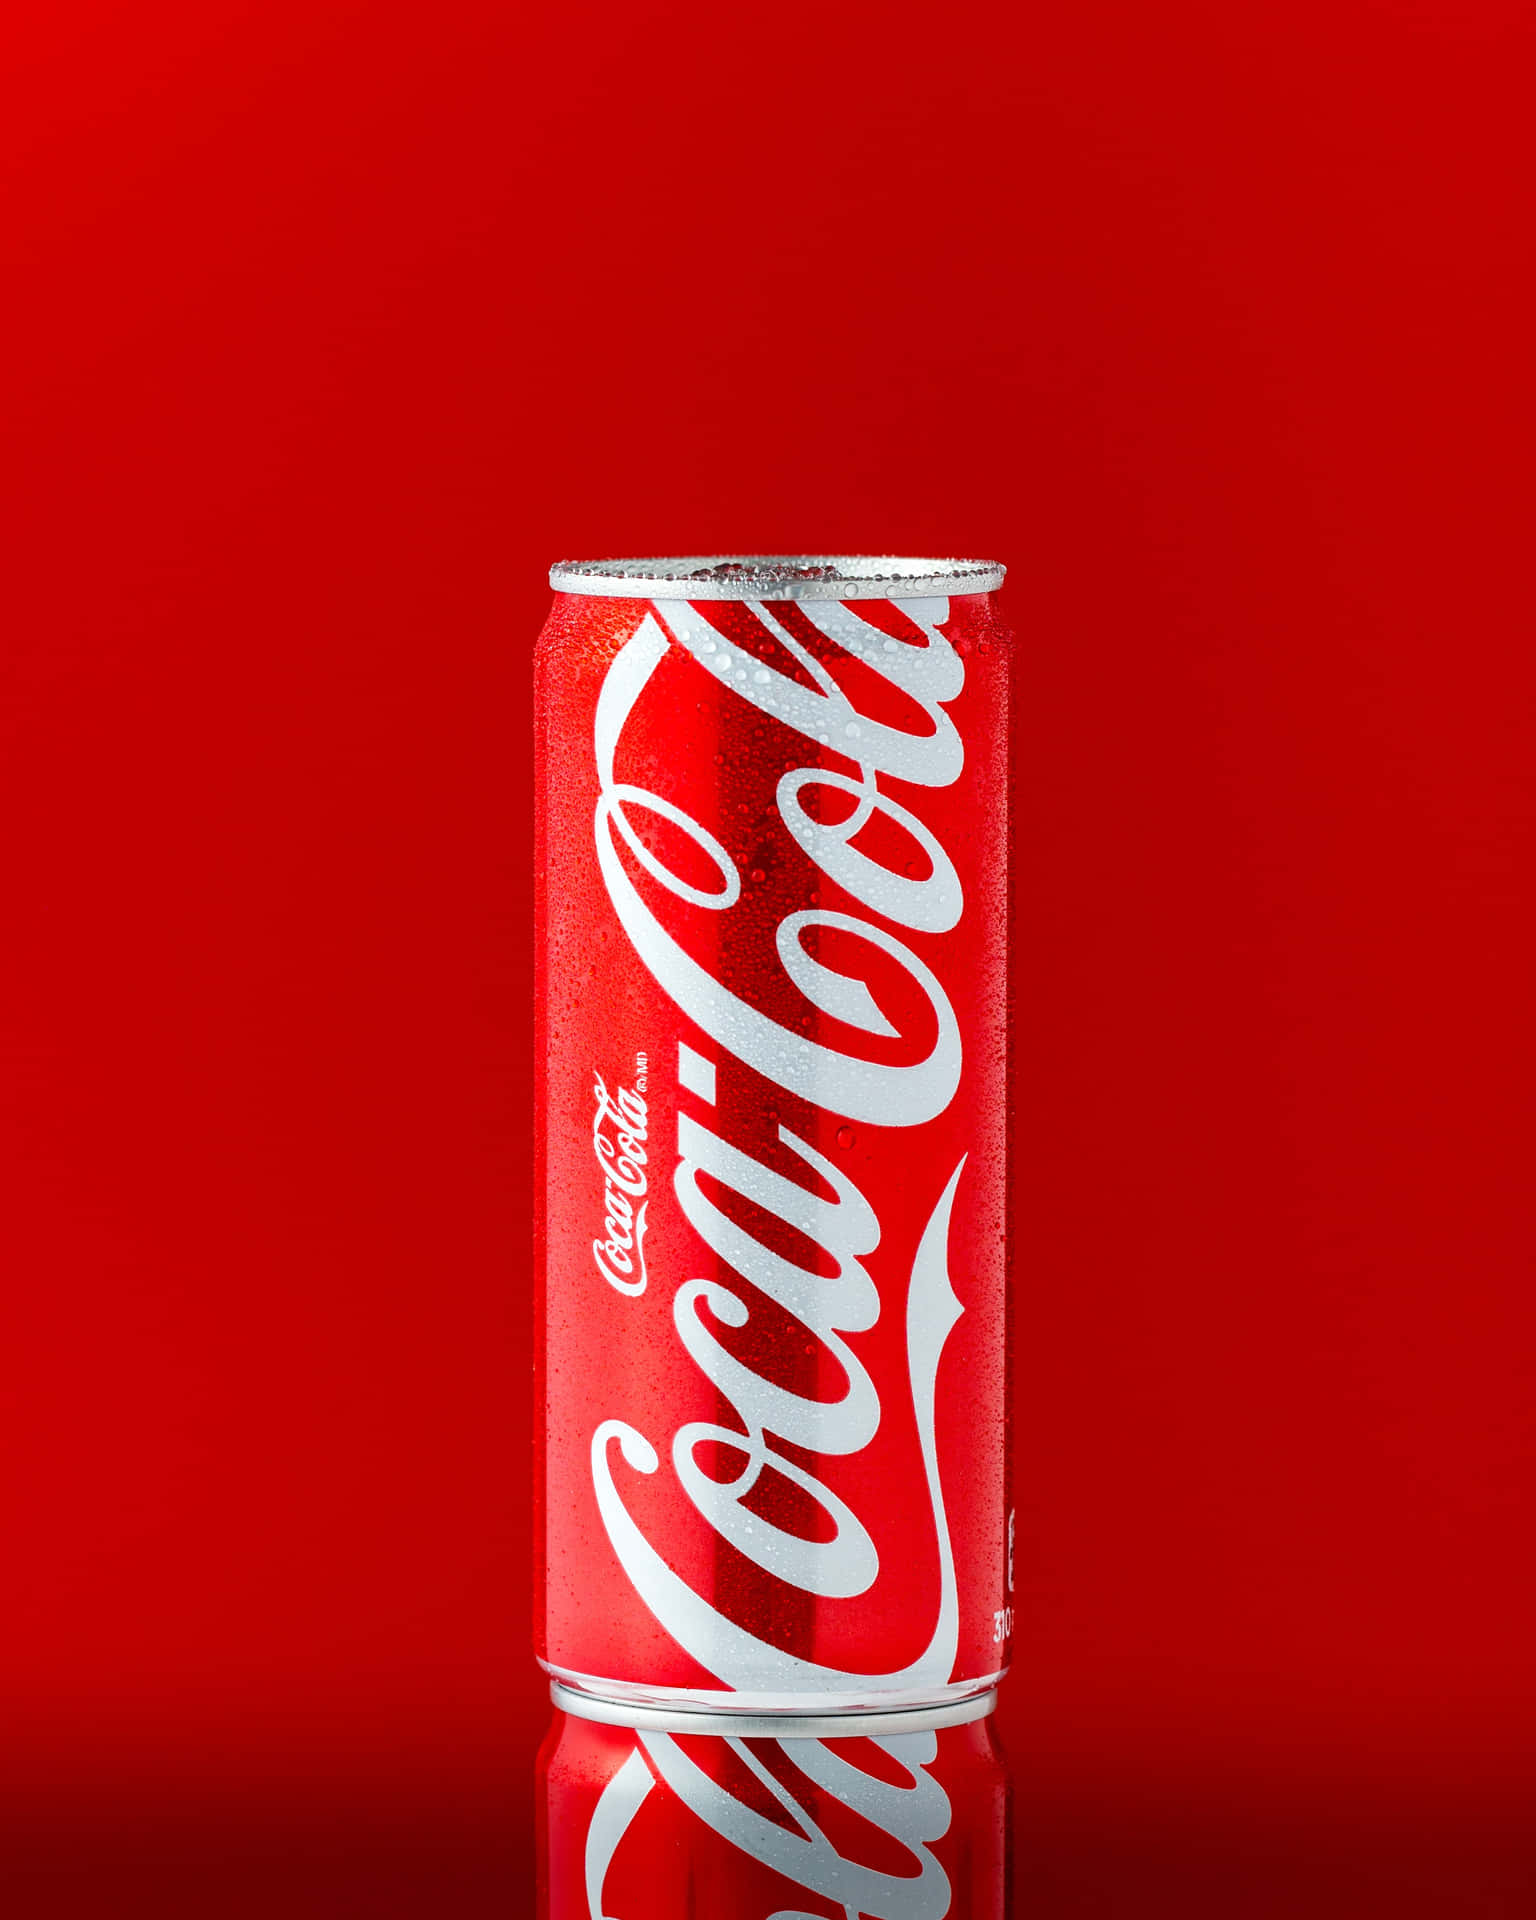 Farvebaggrund af Coca-Cola-dåser.